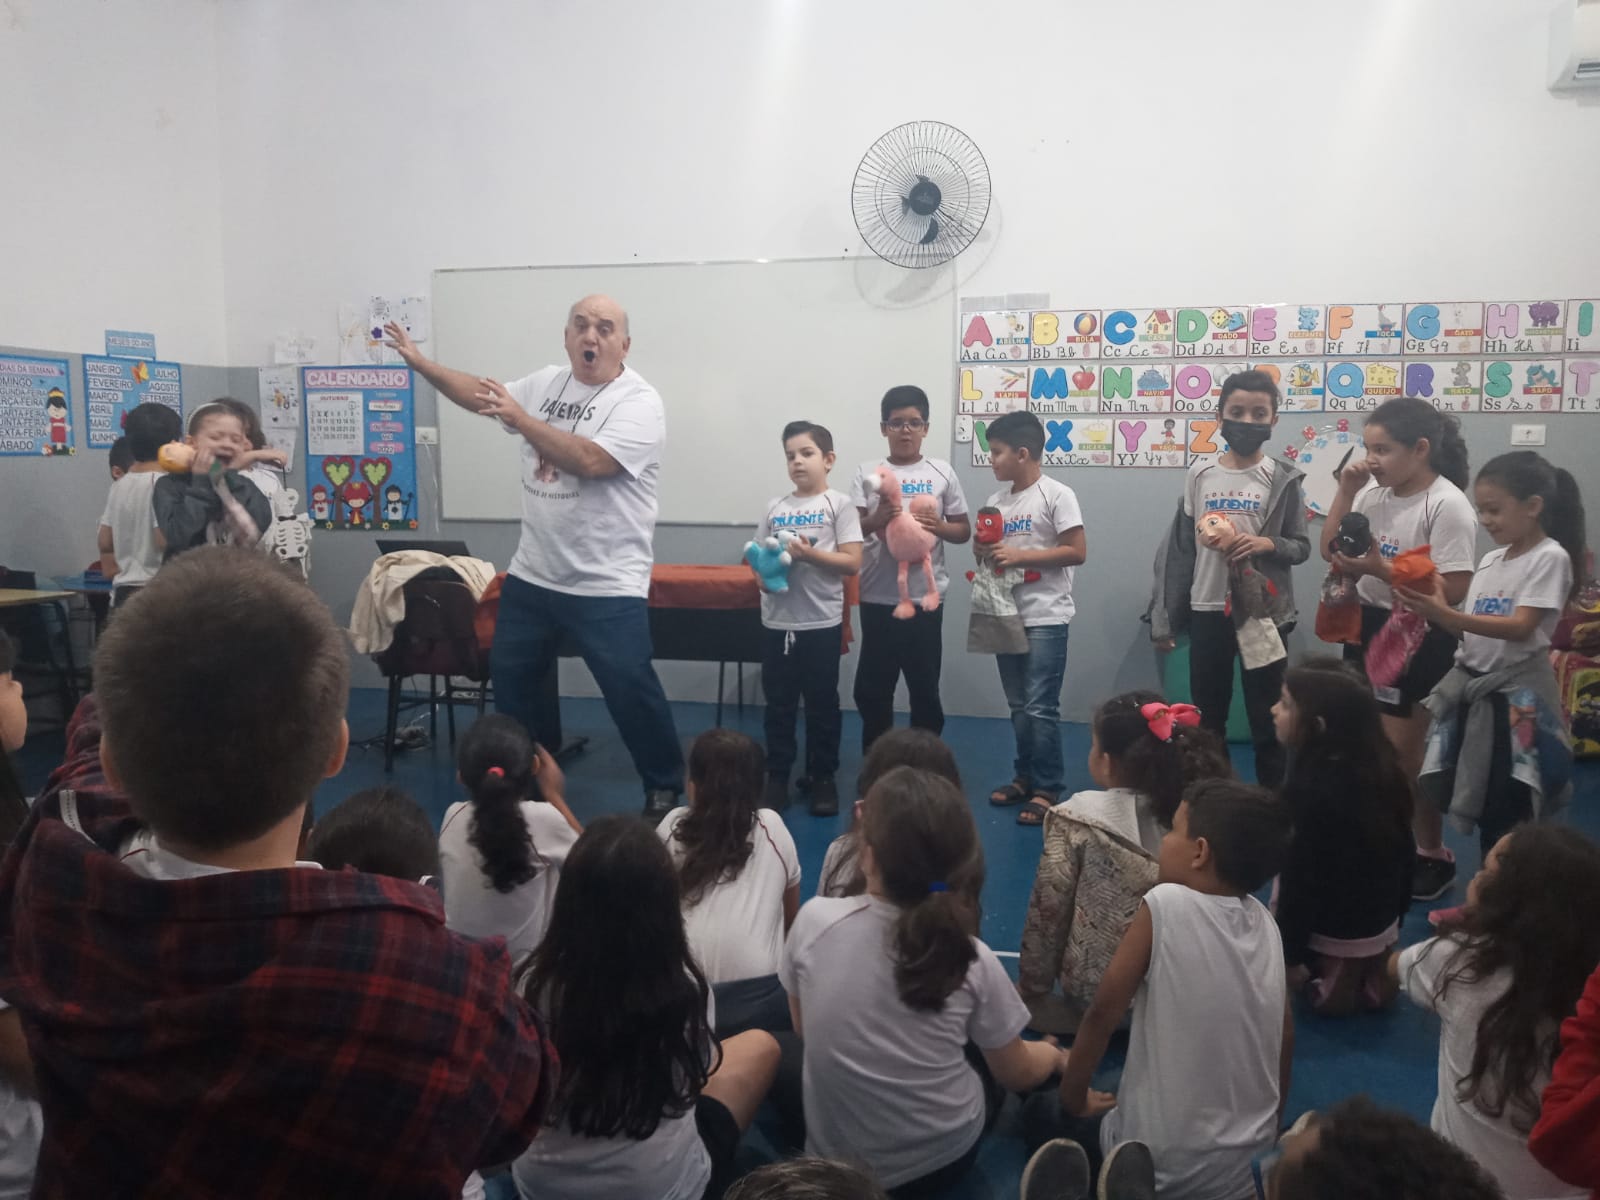 Vicentini entreteve alunos com perguntas e conduziu a encenação de uma pequena história com fantoches